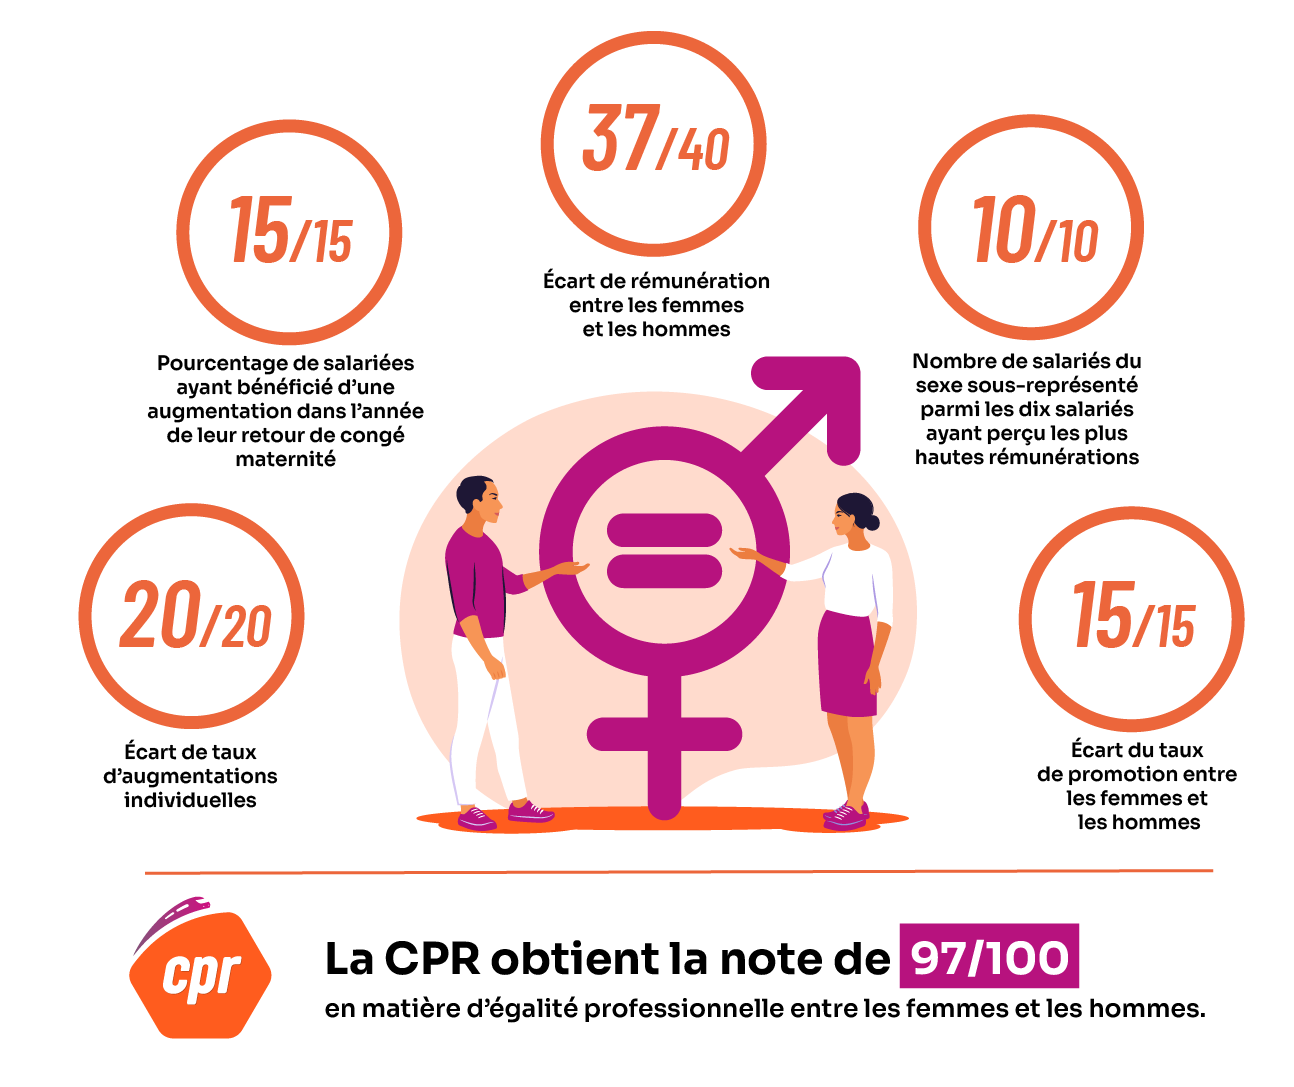 Infographie sur l'égalité professionnelle femmes / hommes de la cpr